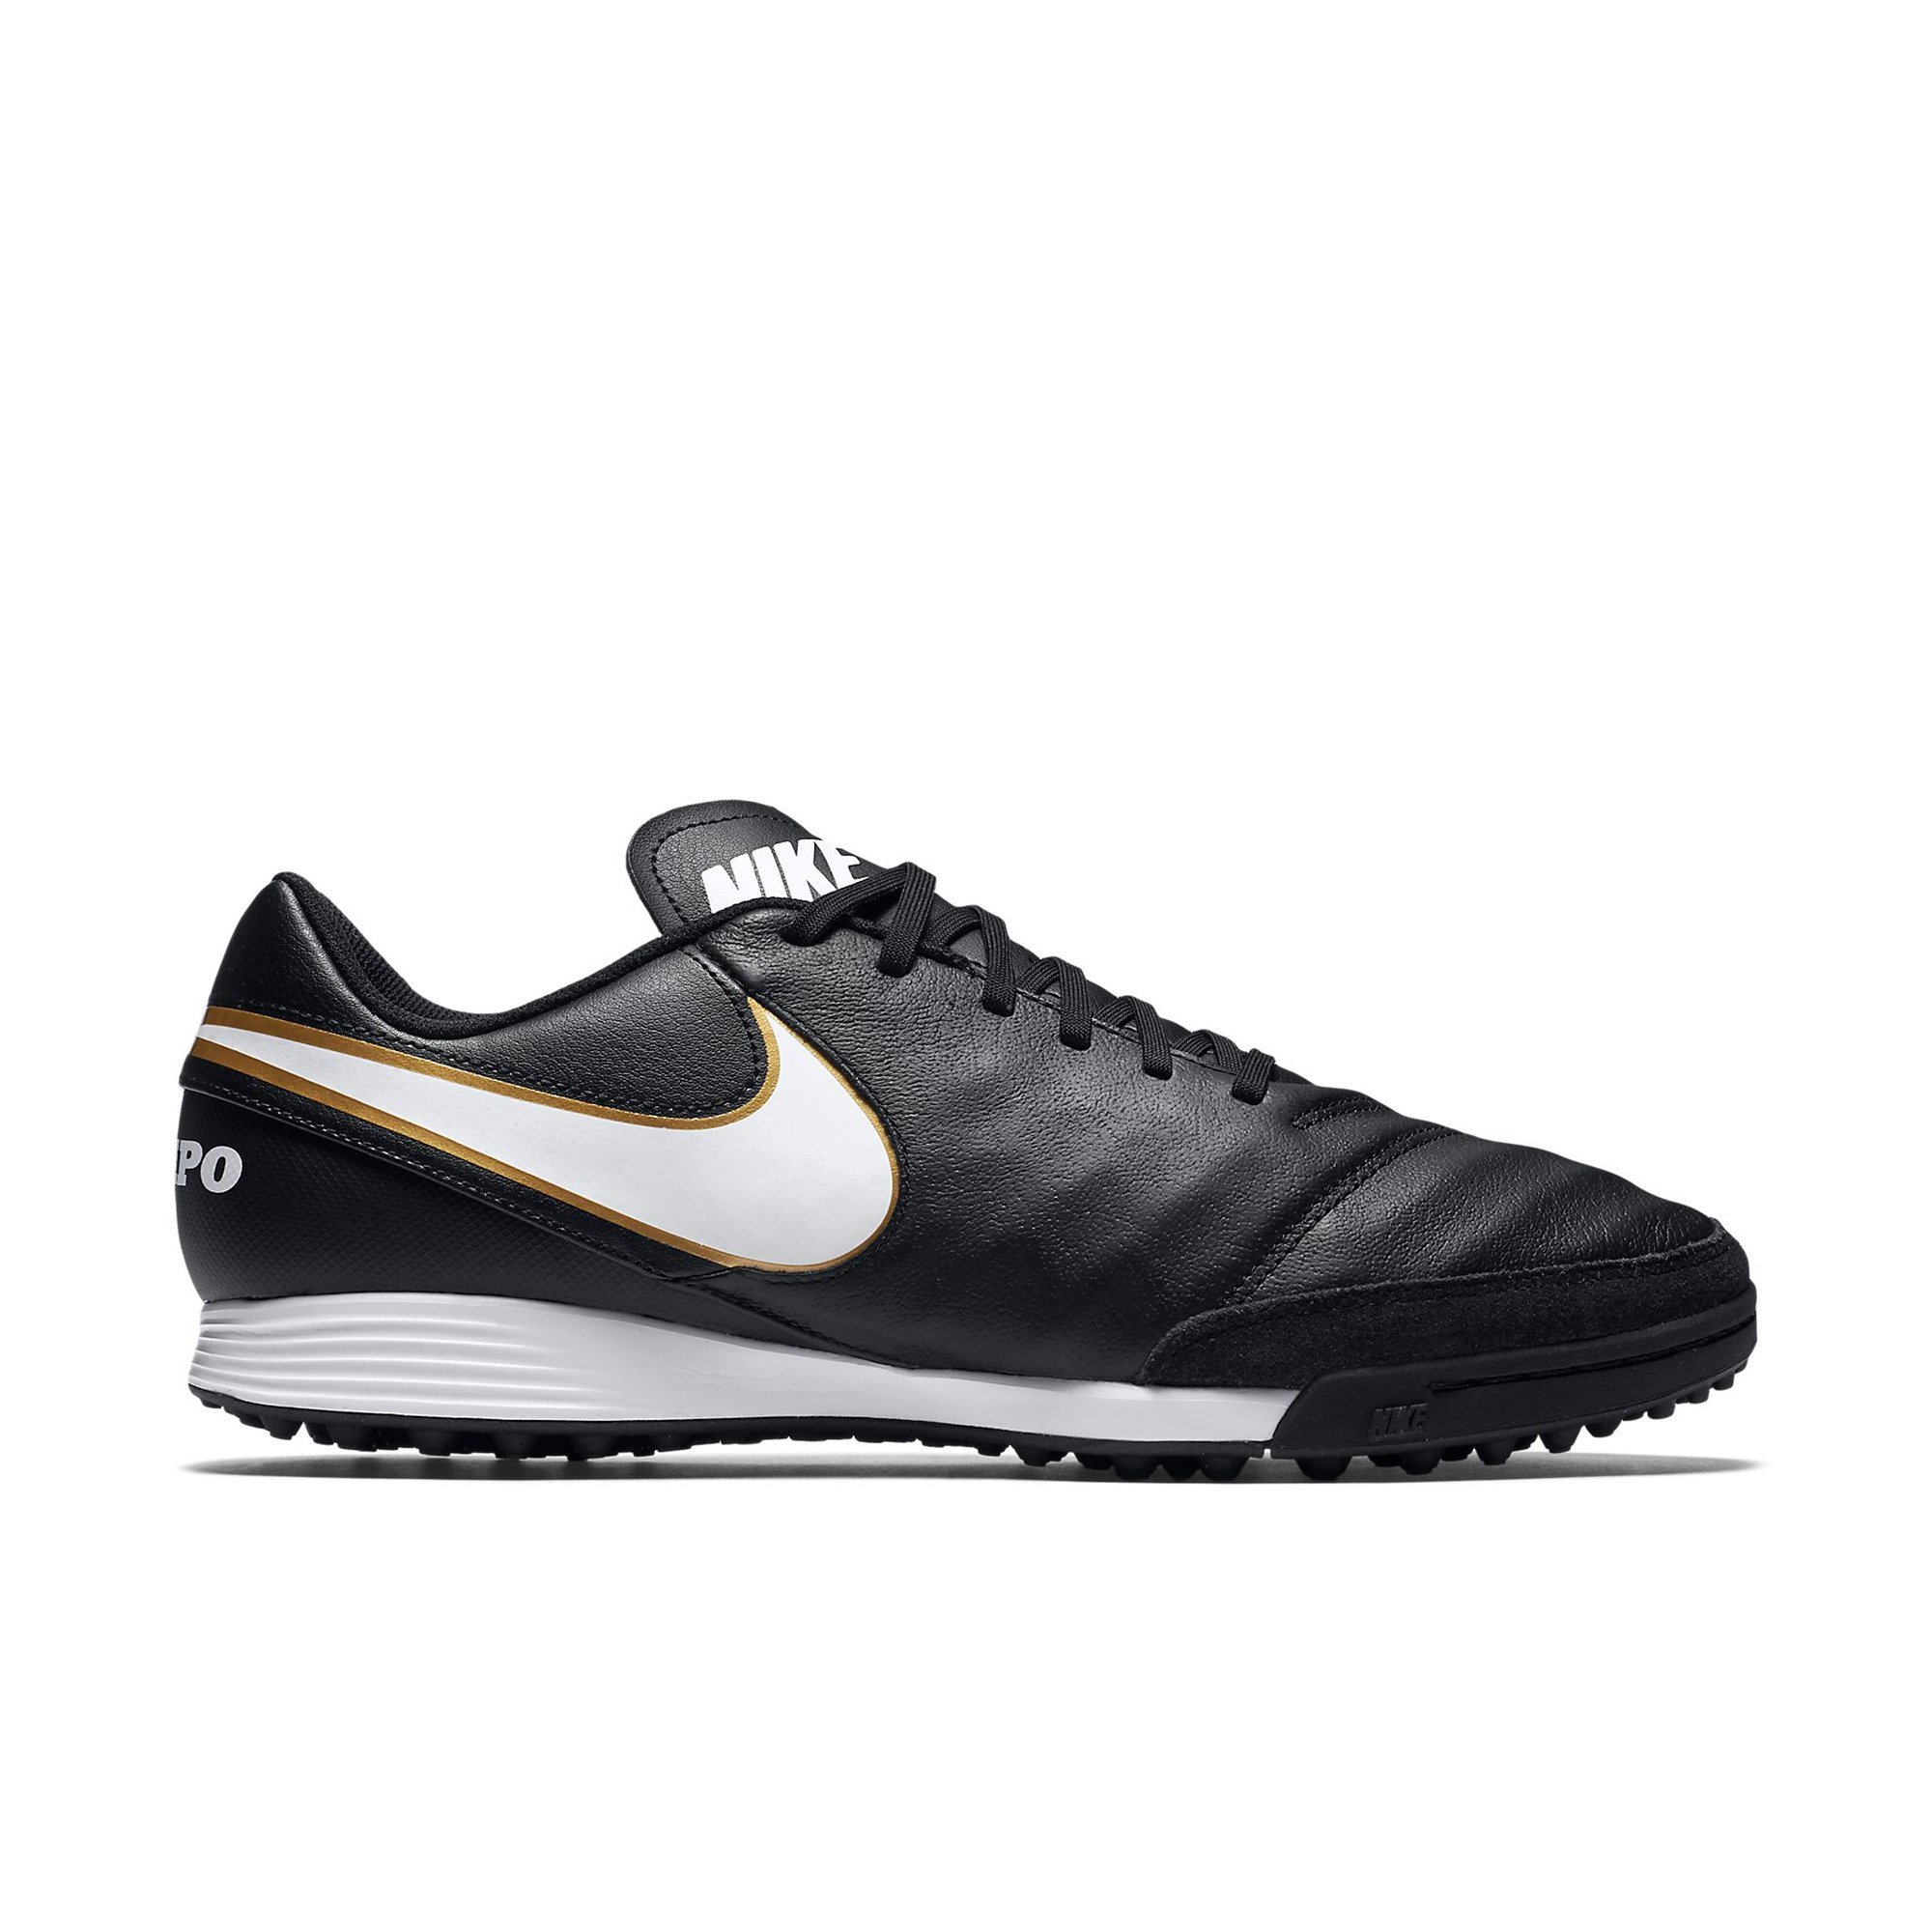 Nike Tiempo Genio Leather II Erkek Halı Saha Ayakkabısı Ürün kodu:  819216-010 | Etichet Sport